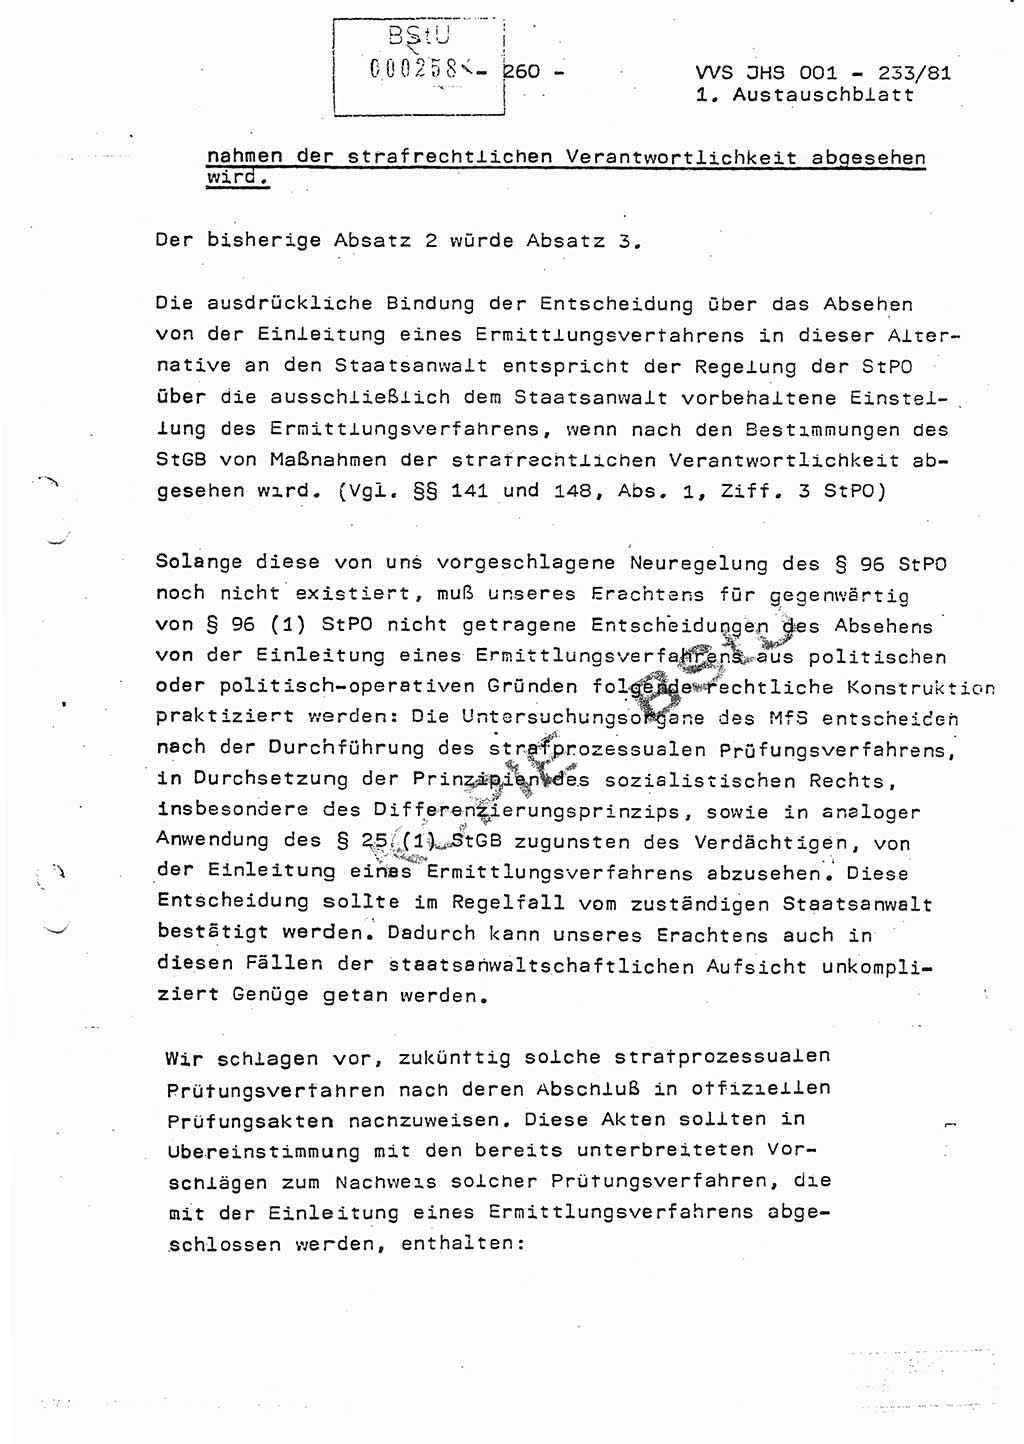 Dissertation Oberstleutnant Horst Zank (JHS), Oberstleutnant Dr. Karl-Heinz Knoblauch (JHS), Oberstleutnant Gustav-Adolf Kowalewski (HA Ⅸ), Oberstleutnant Wolfgang Plötner (HA Ⅸ), Ministerium für Staatssicherheit (MfS) [Deutsche Demokratische Republik (DDR)], Juristische Hochschule (JHS), Vertrauliche Verschlußsache (VVS) o001-233/81, Potsdam 1981, Blatt 260 (Diss. MfS DDR JHS VVS o001-233/81 1981, Bl. 260)